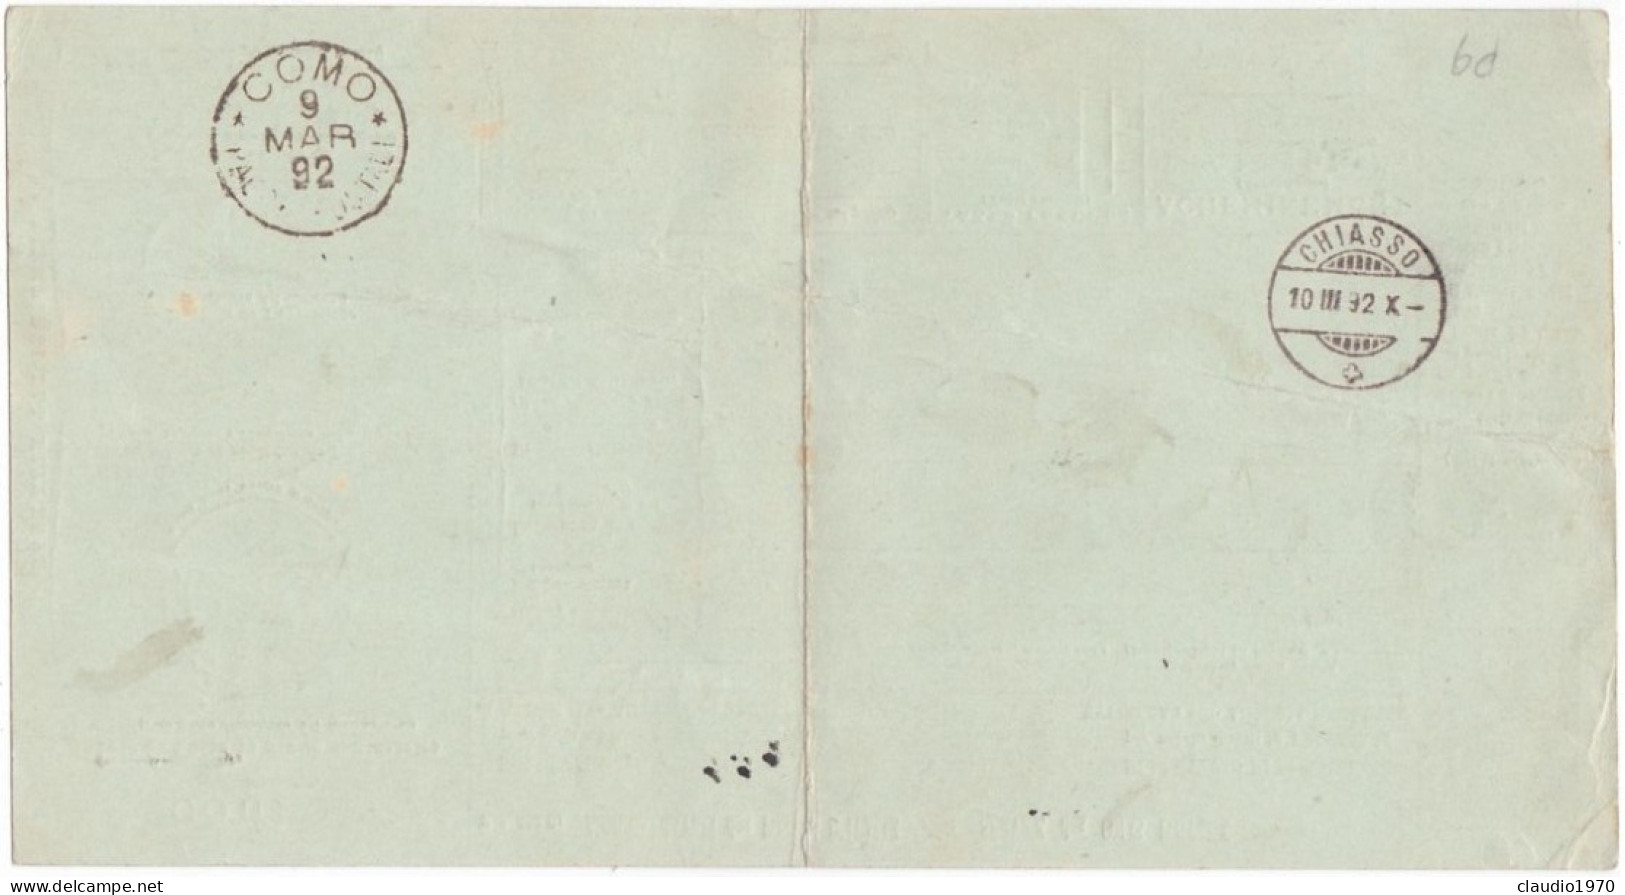 ITALIA - REGNO - CERNOBBIO (COMO) - BOLLETTINI PACCHI POSTALE L.1,25 - VIAGGIATO PER CHIASSO - SVIZZERA - 1892  - P. 9 - Postpaketten